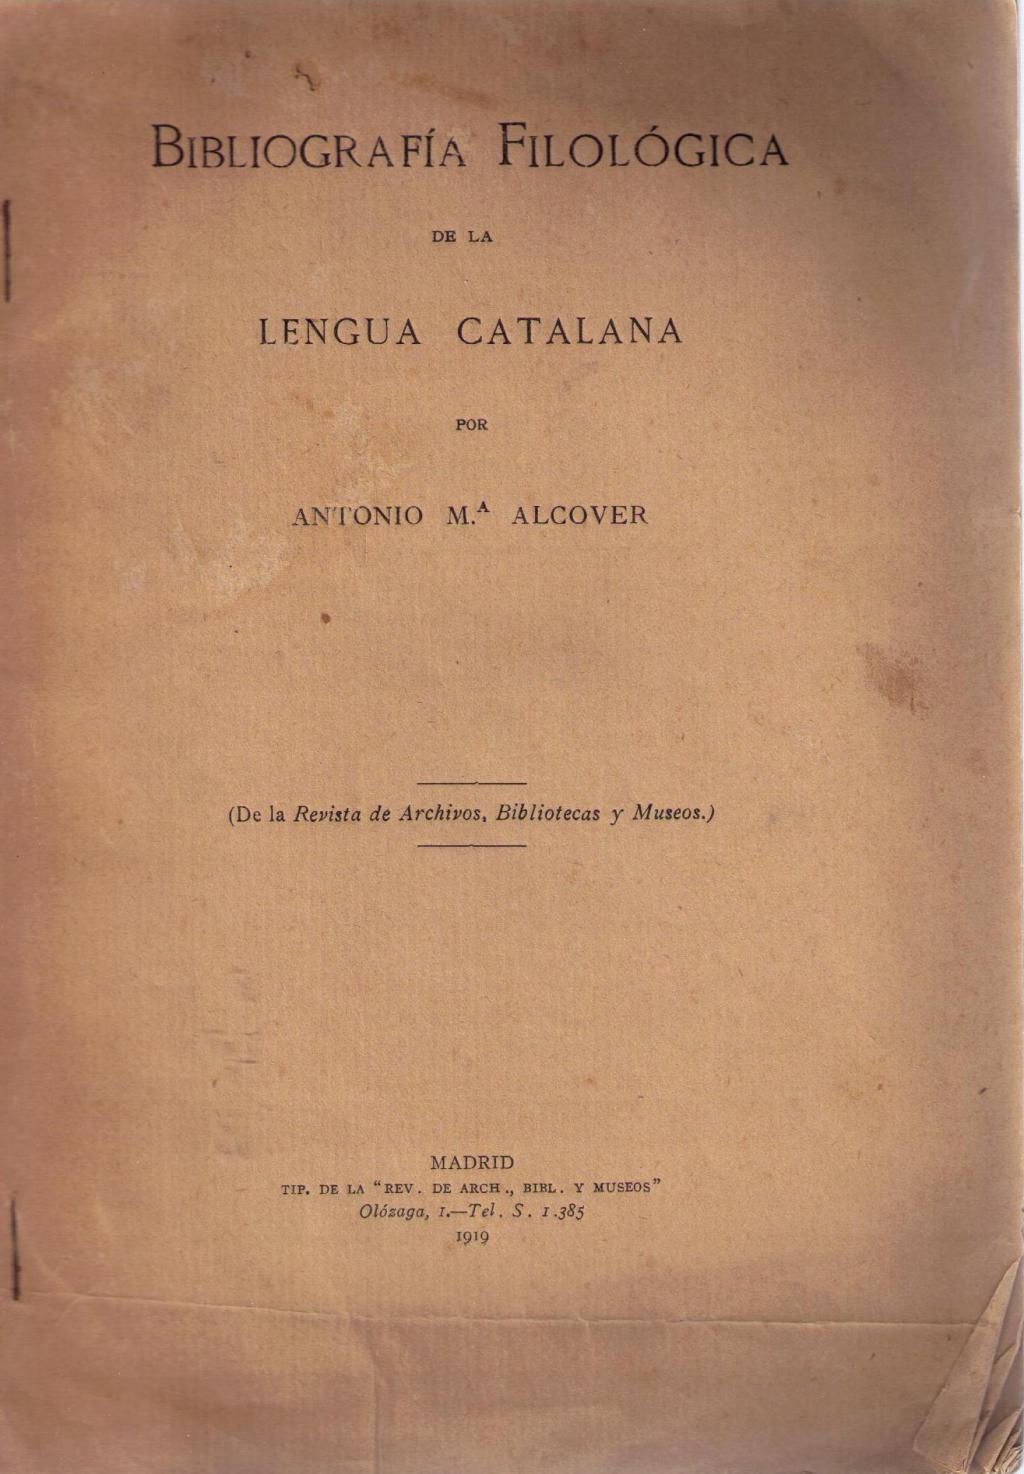 Coberta de Bibliografia Filológica de la Lengua Catalana